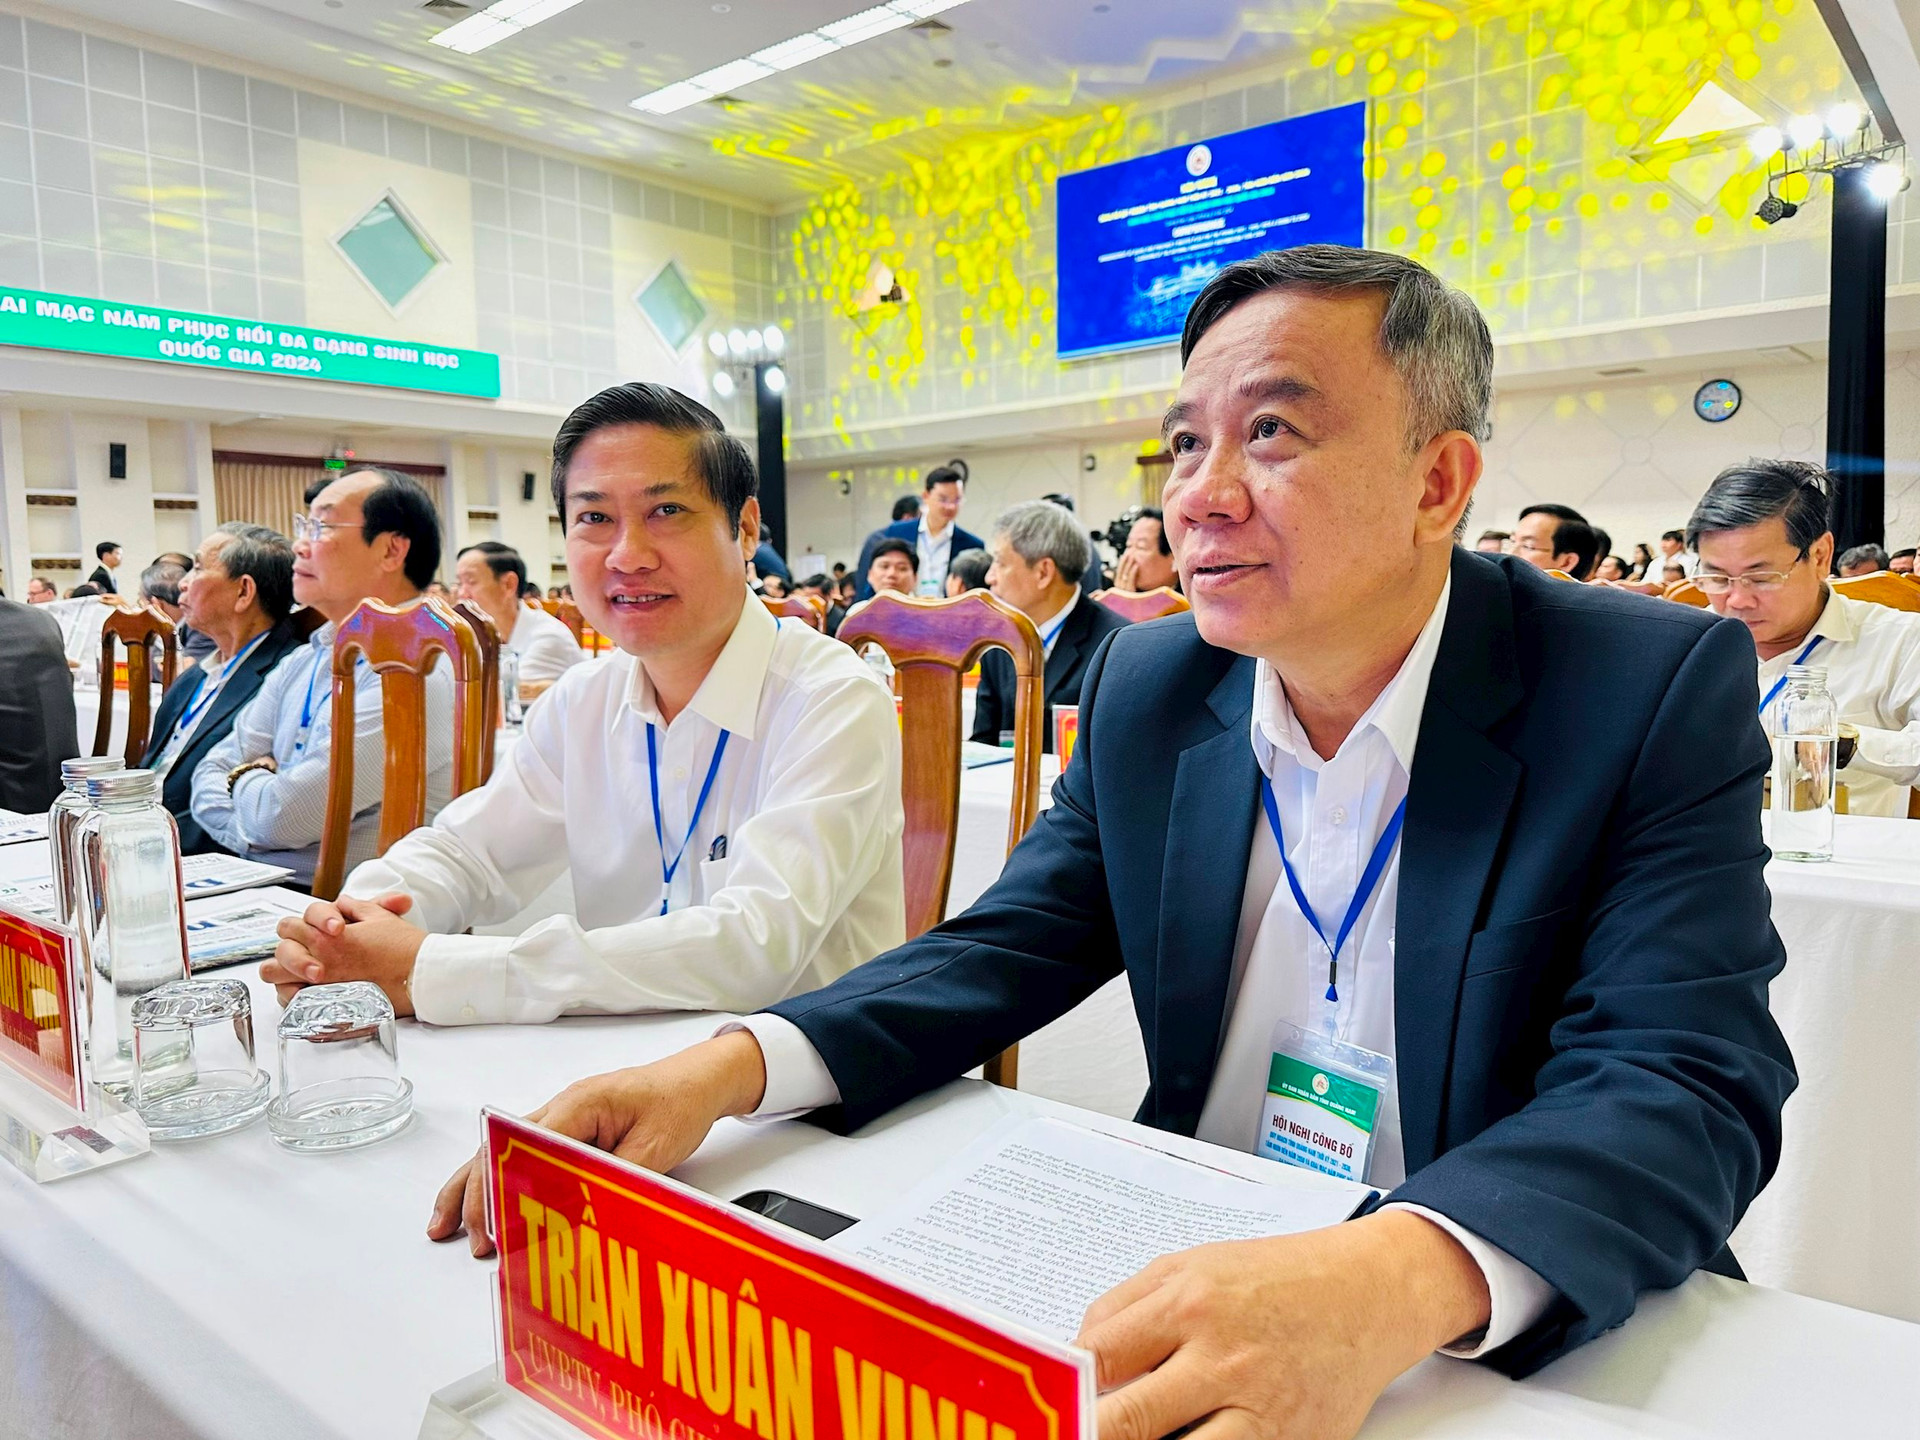 Lãnh đạo tỉnh dự Hội nghị công bố Quy hoạch tỉnh Quảng Nam thời kỳ 2021 - 2030, tầm nhìn đến 2050 và khai mạc Năm phục hồi đa dạng sinh học quốc gia - Quảng Nam 2024.